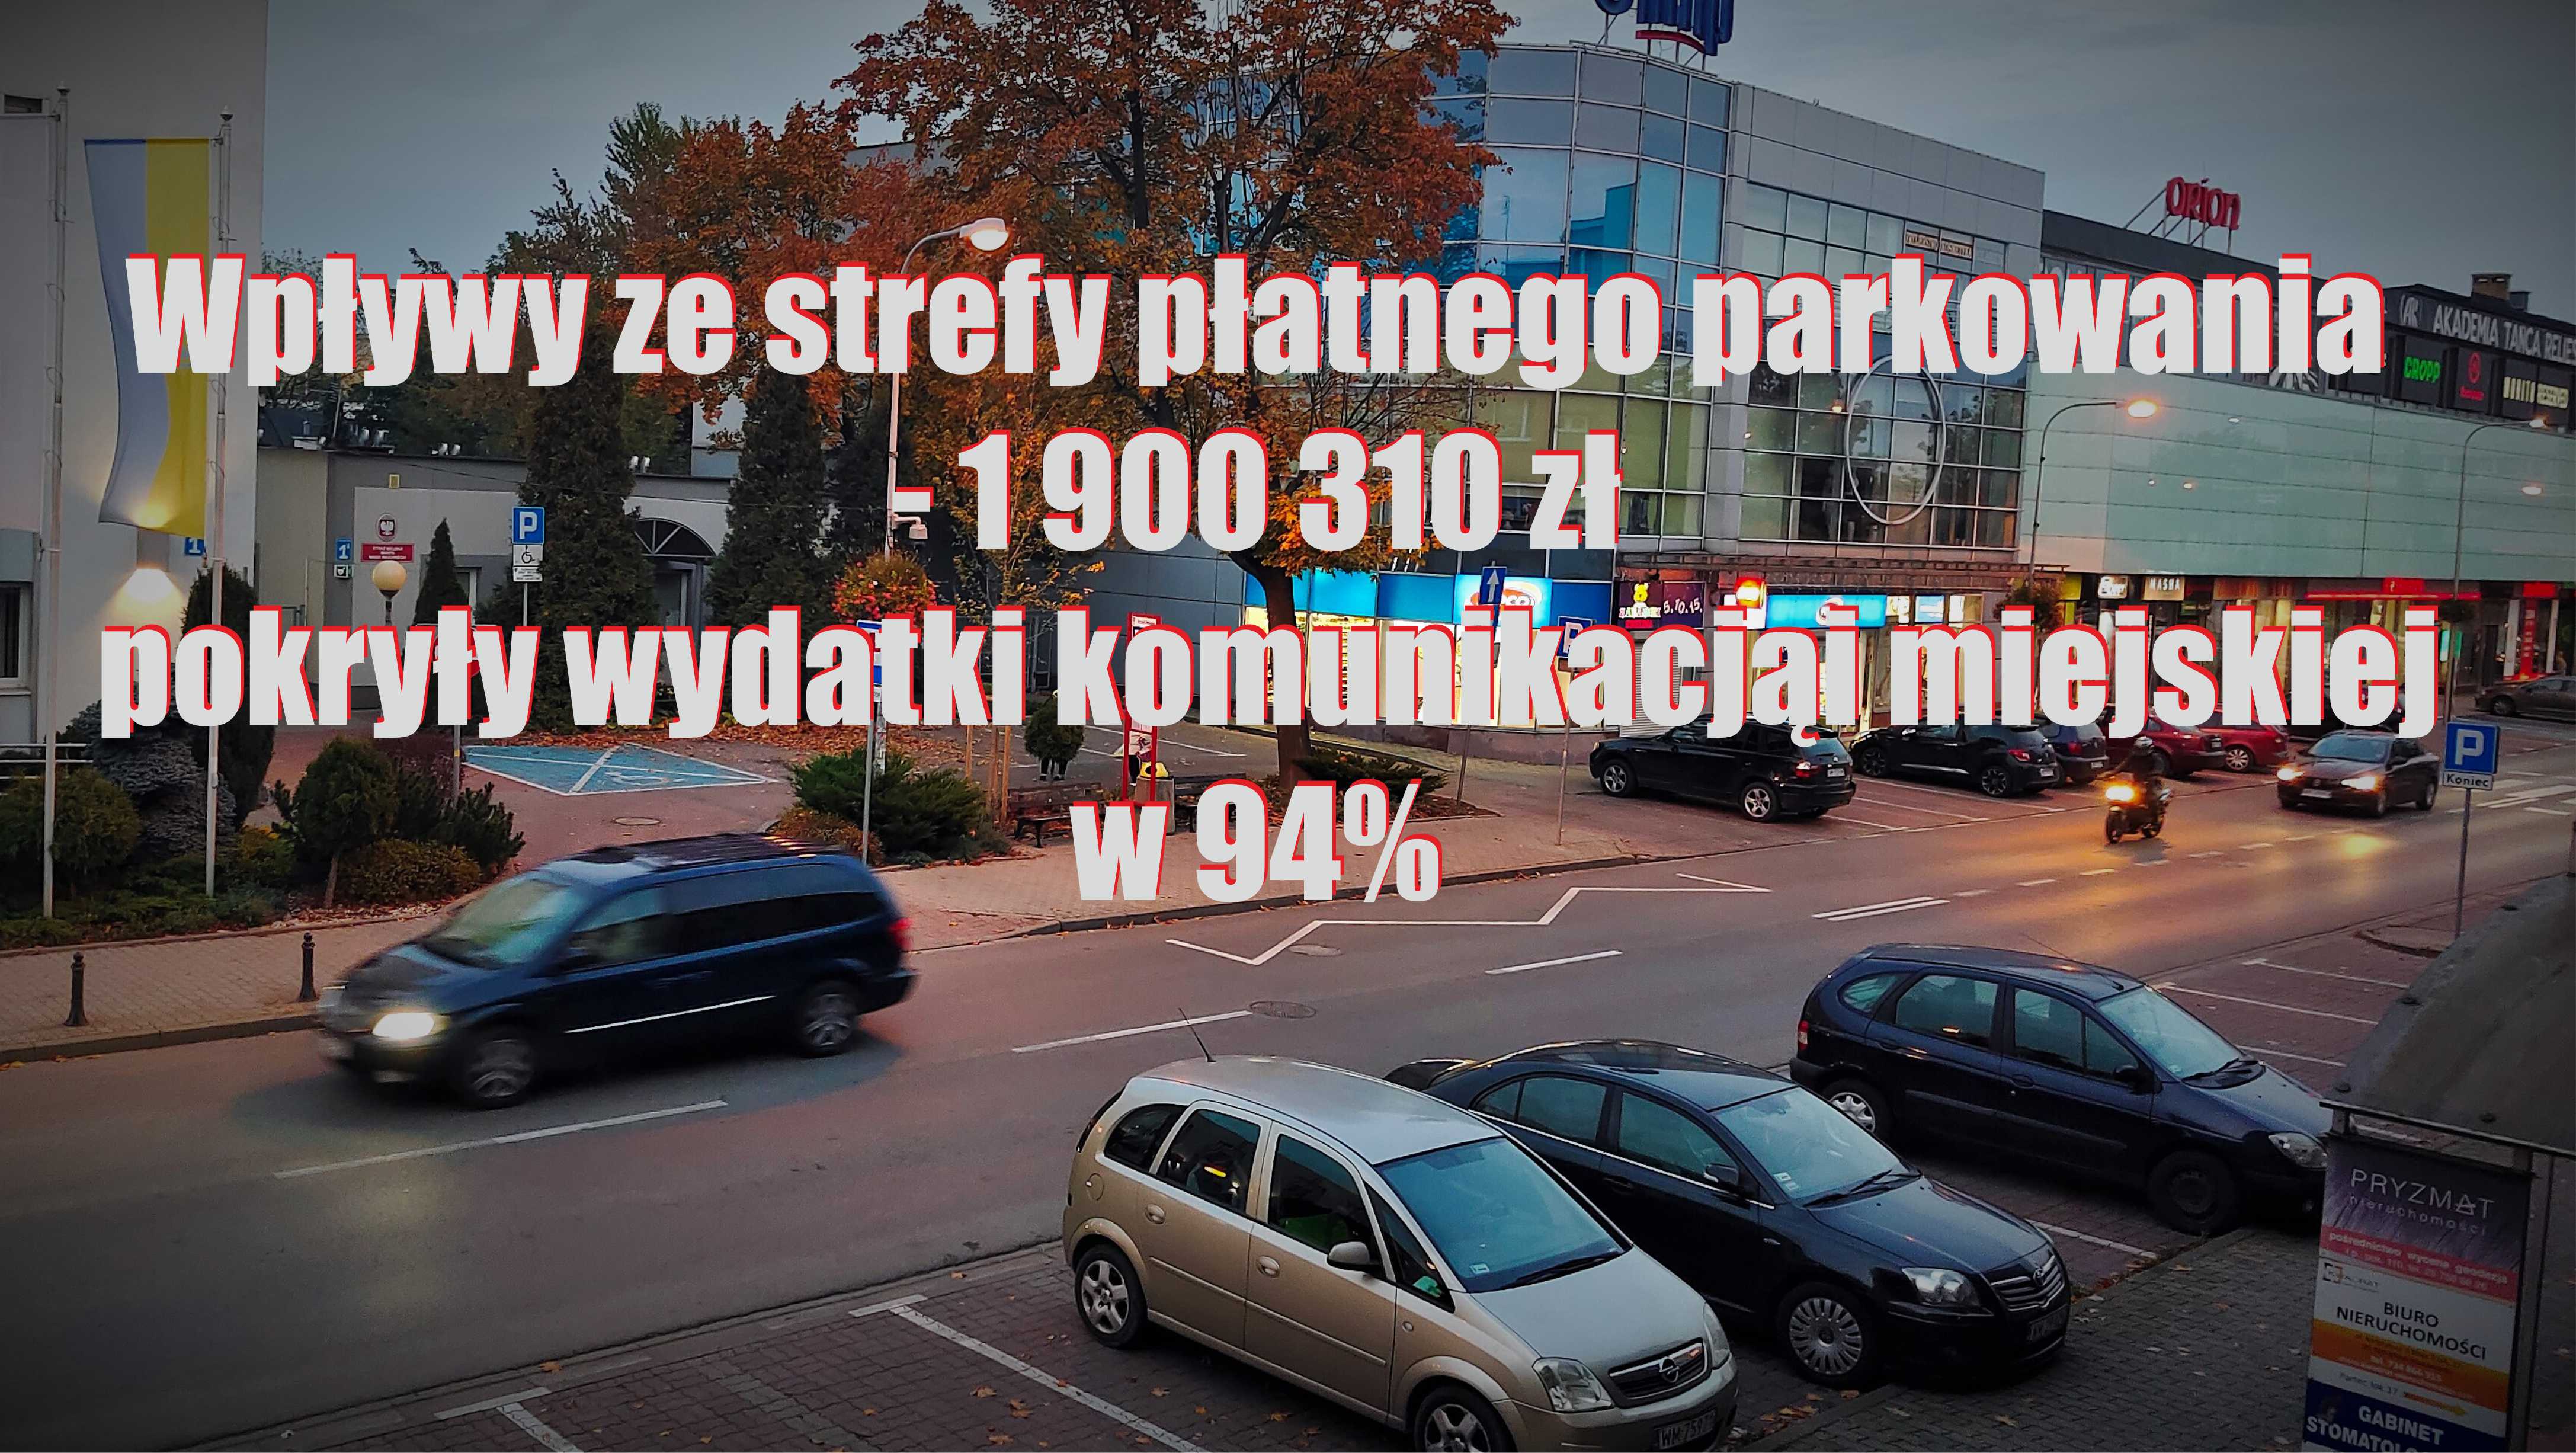 Misk Mazowiecki ciemizcw / Ringi parkingw